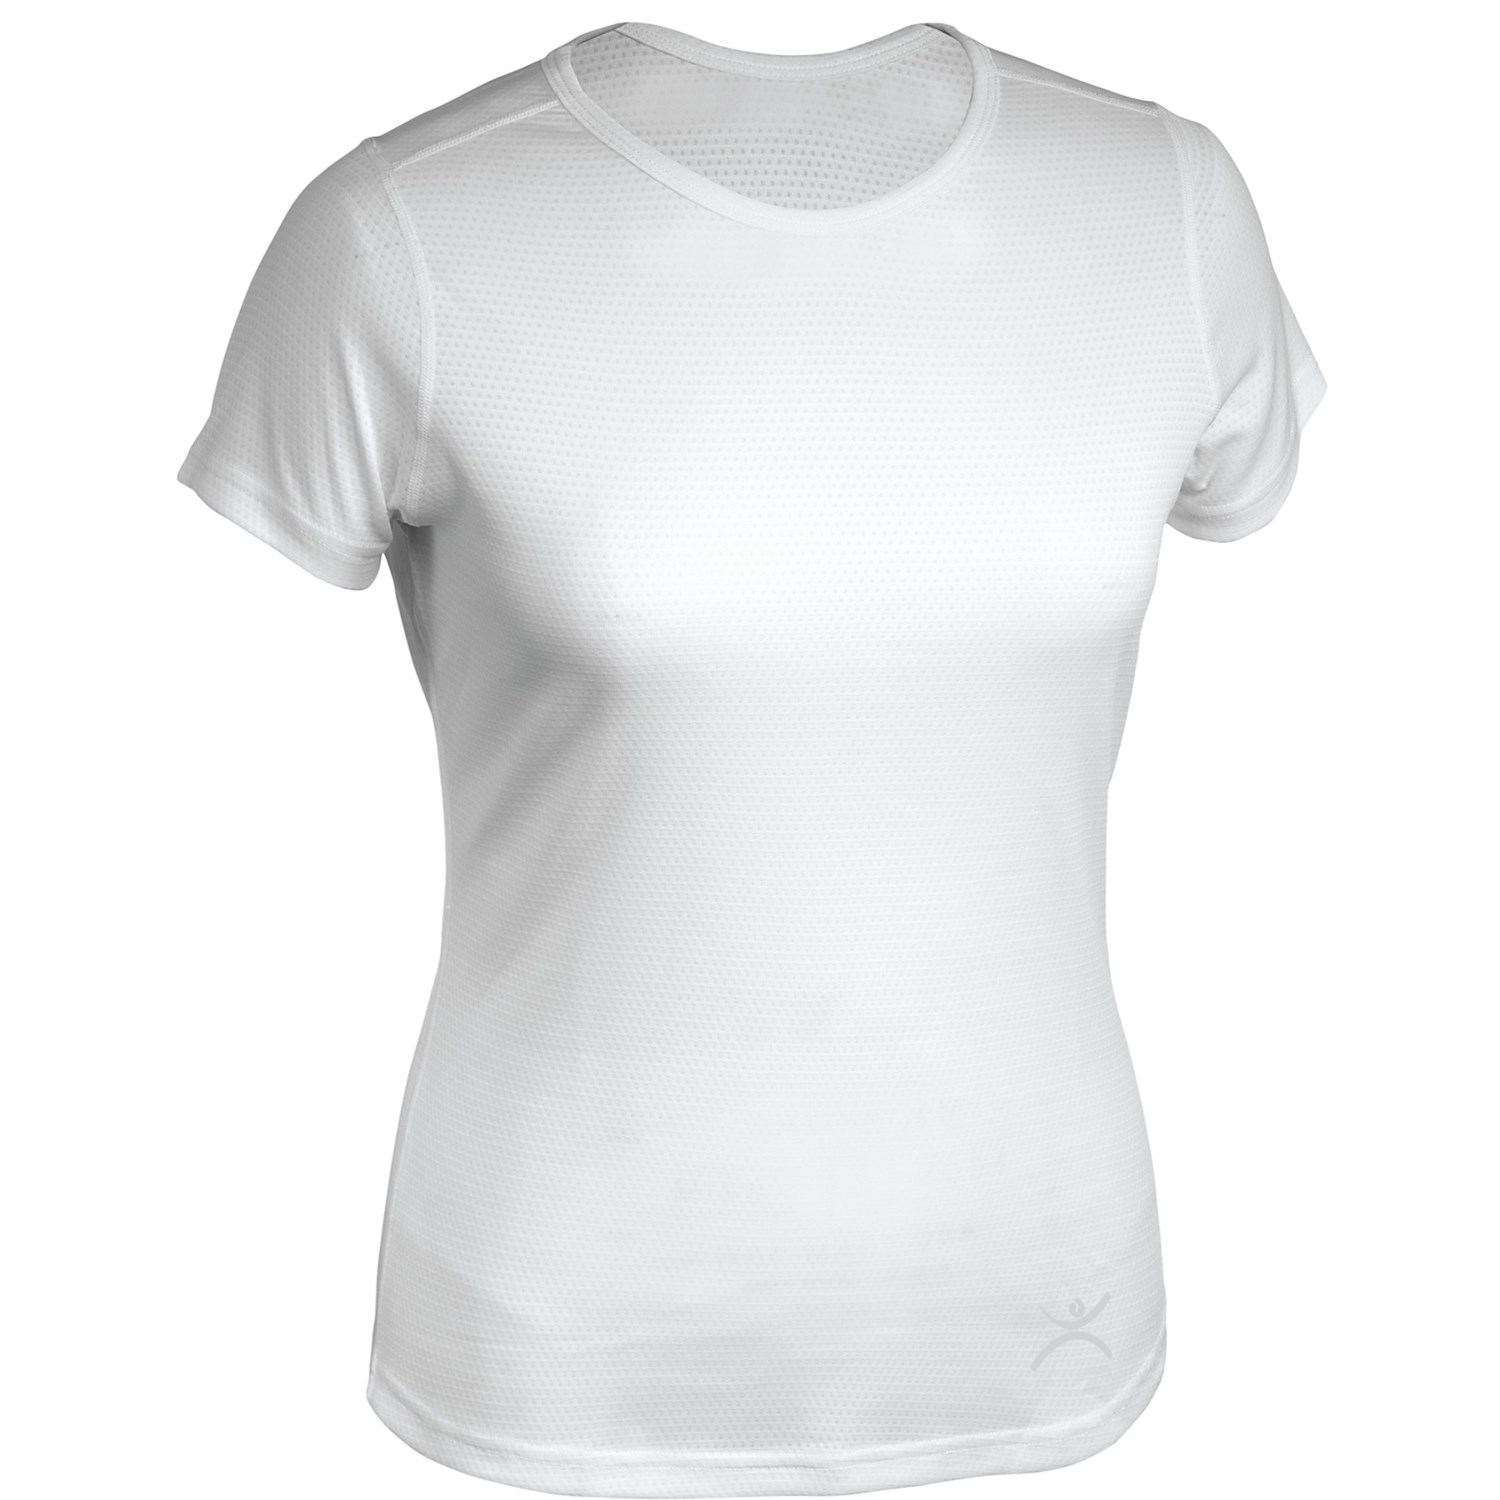 Terramar Helix T Shirt   UPF 25+,Lightweight, Short Sleeve (For Women 